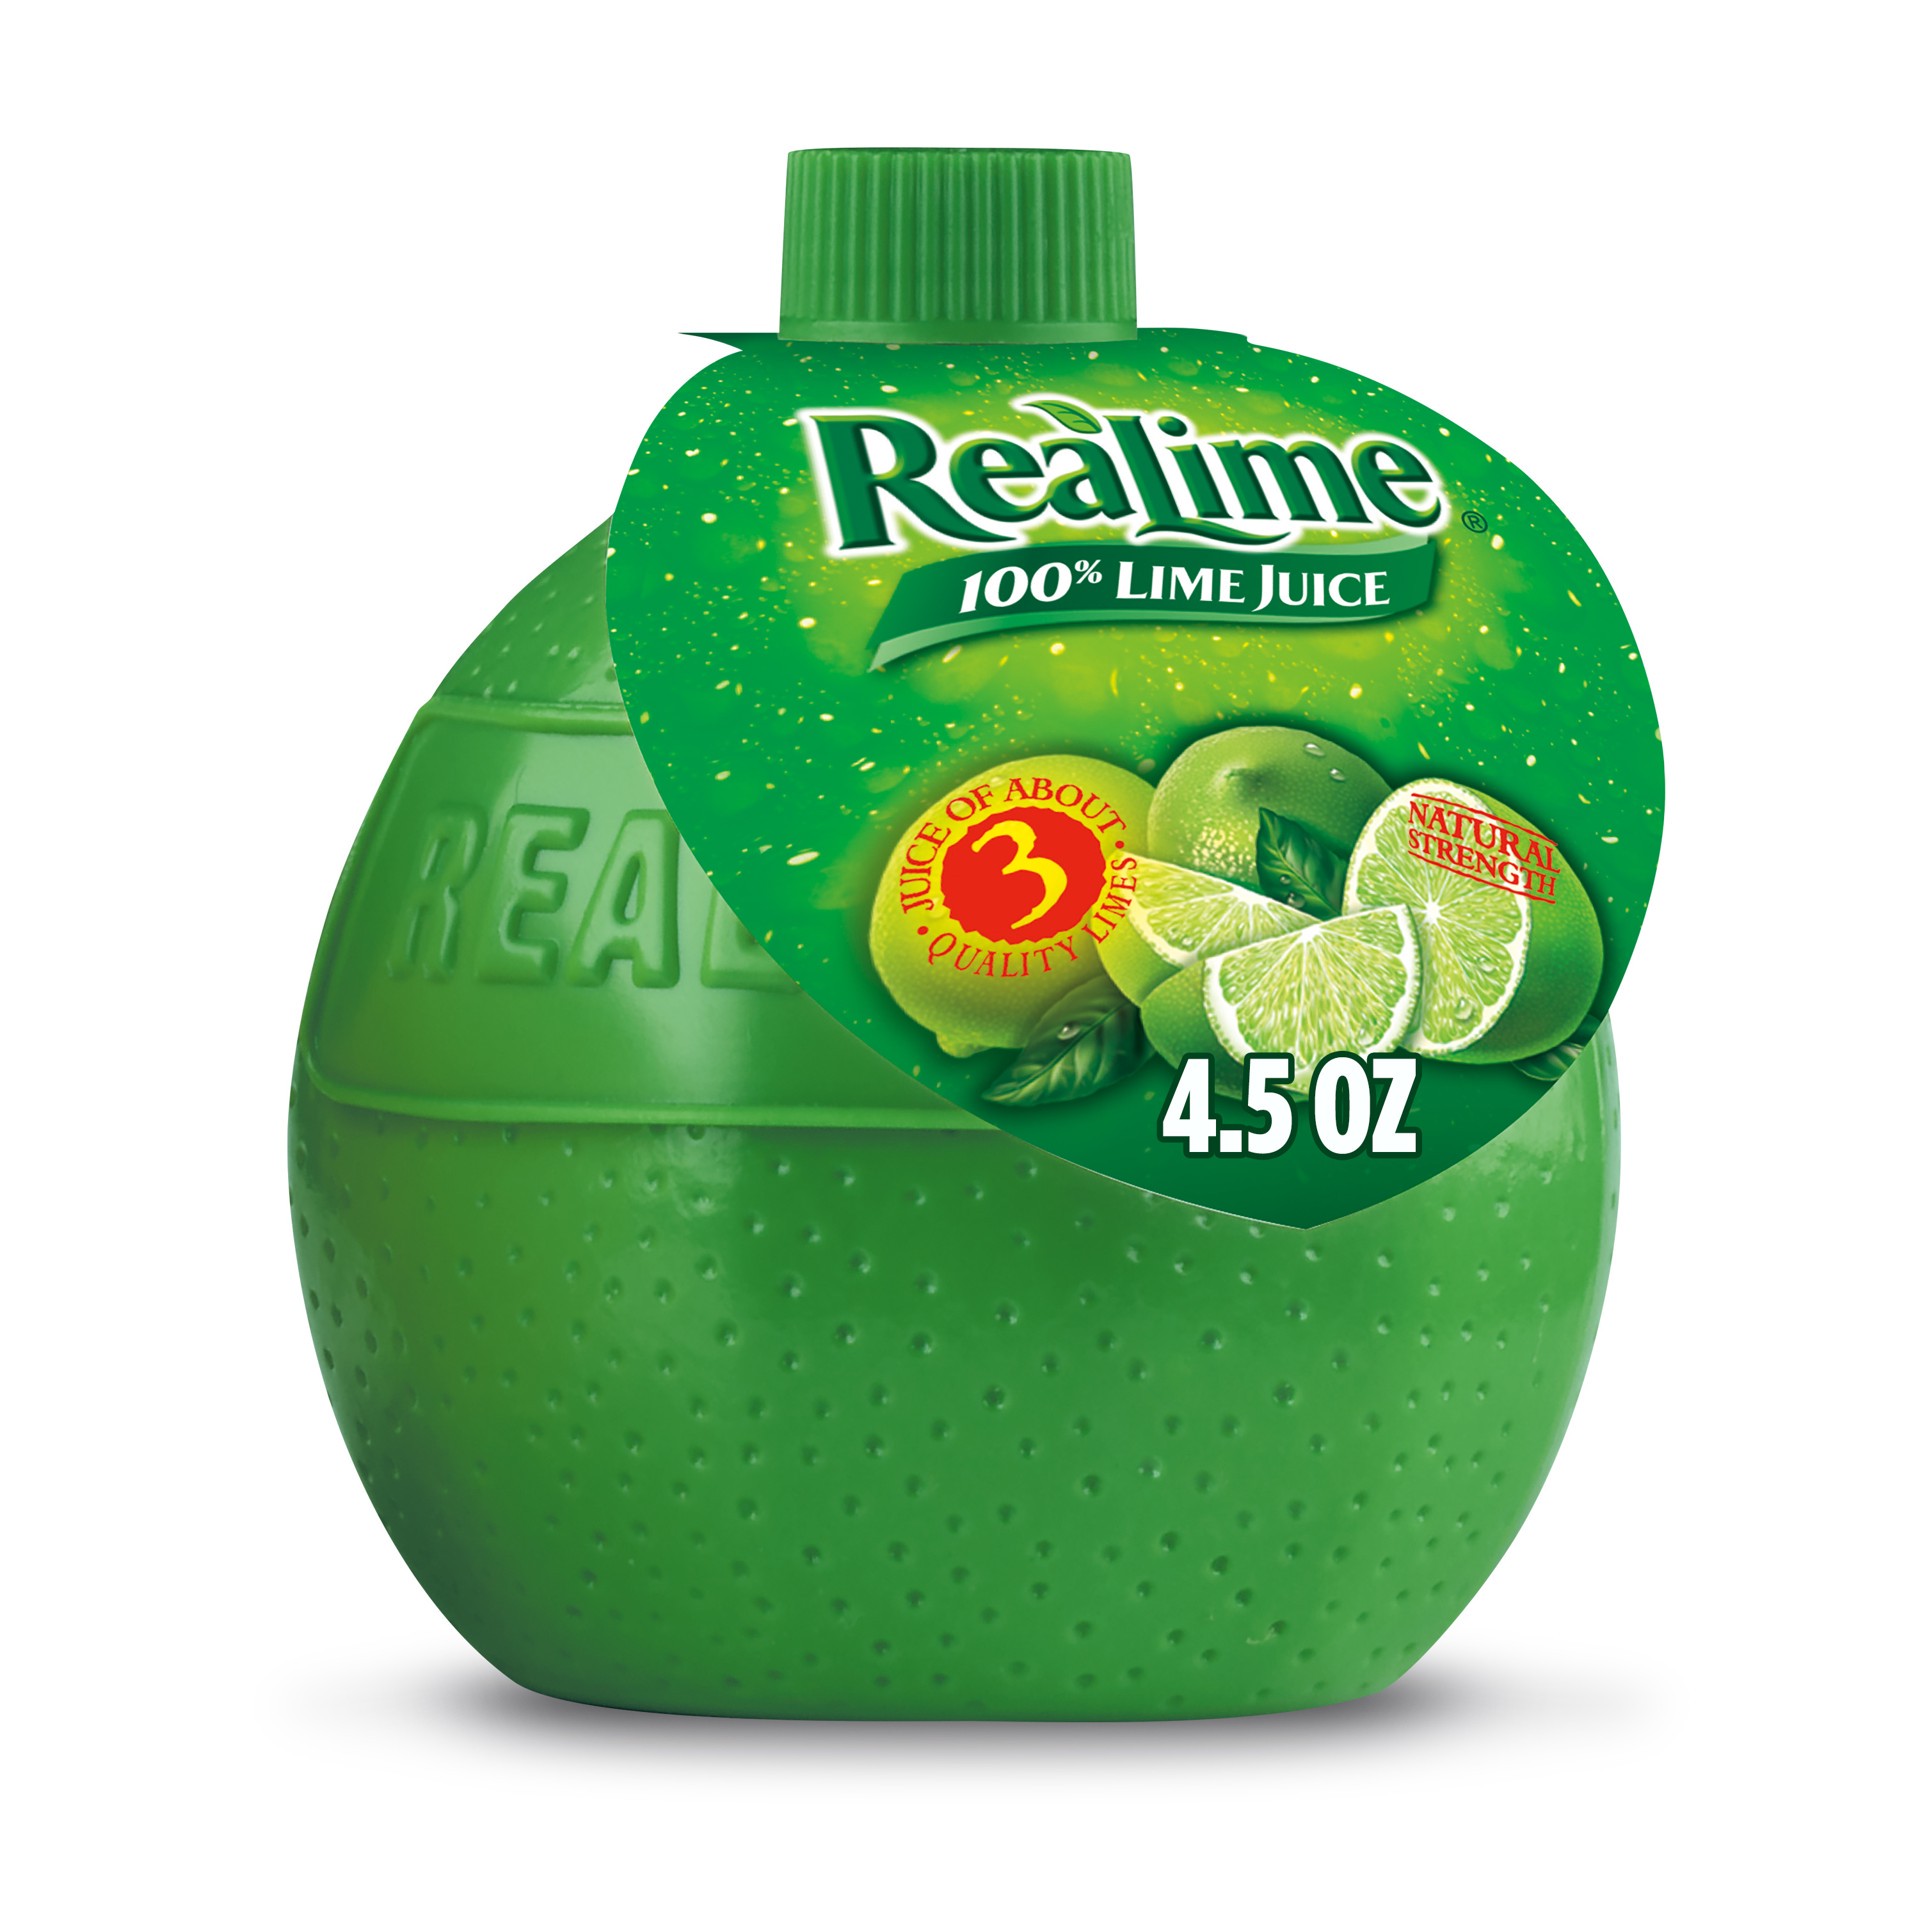 slide 1 of 2, ReaLime 100% Lime Juice, 4.5 fl oz bottle, 4.50 fl oz